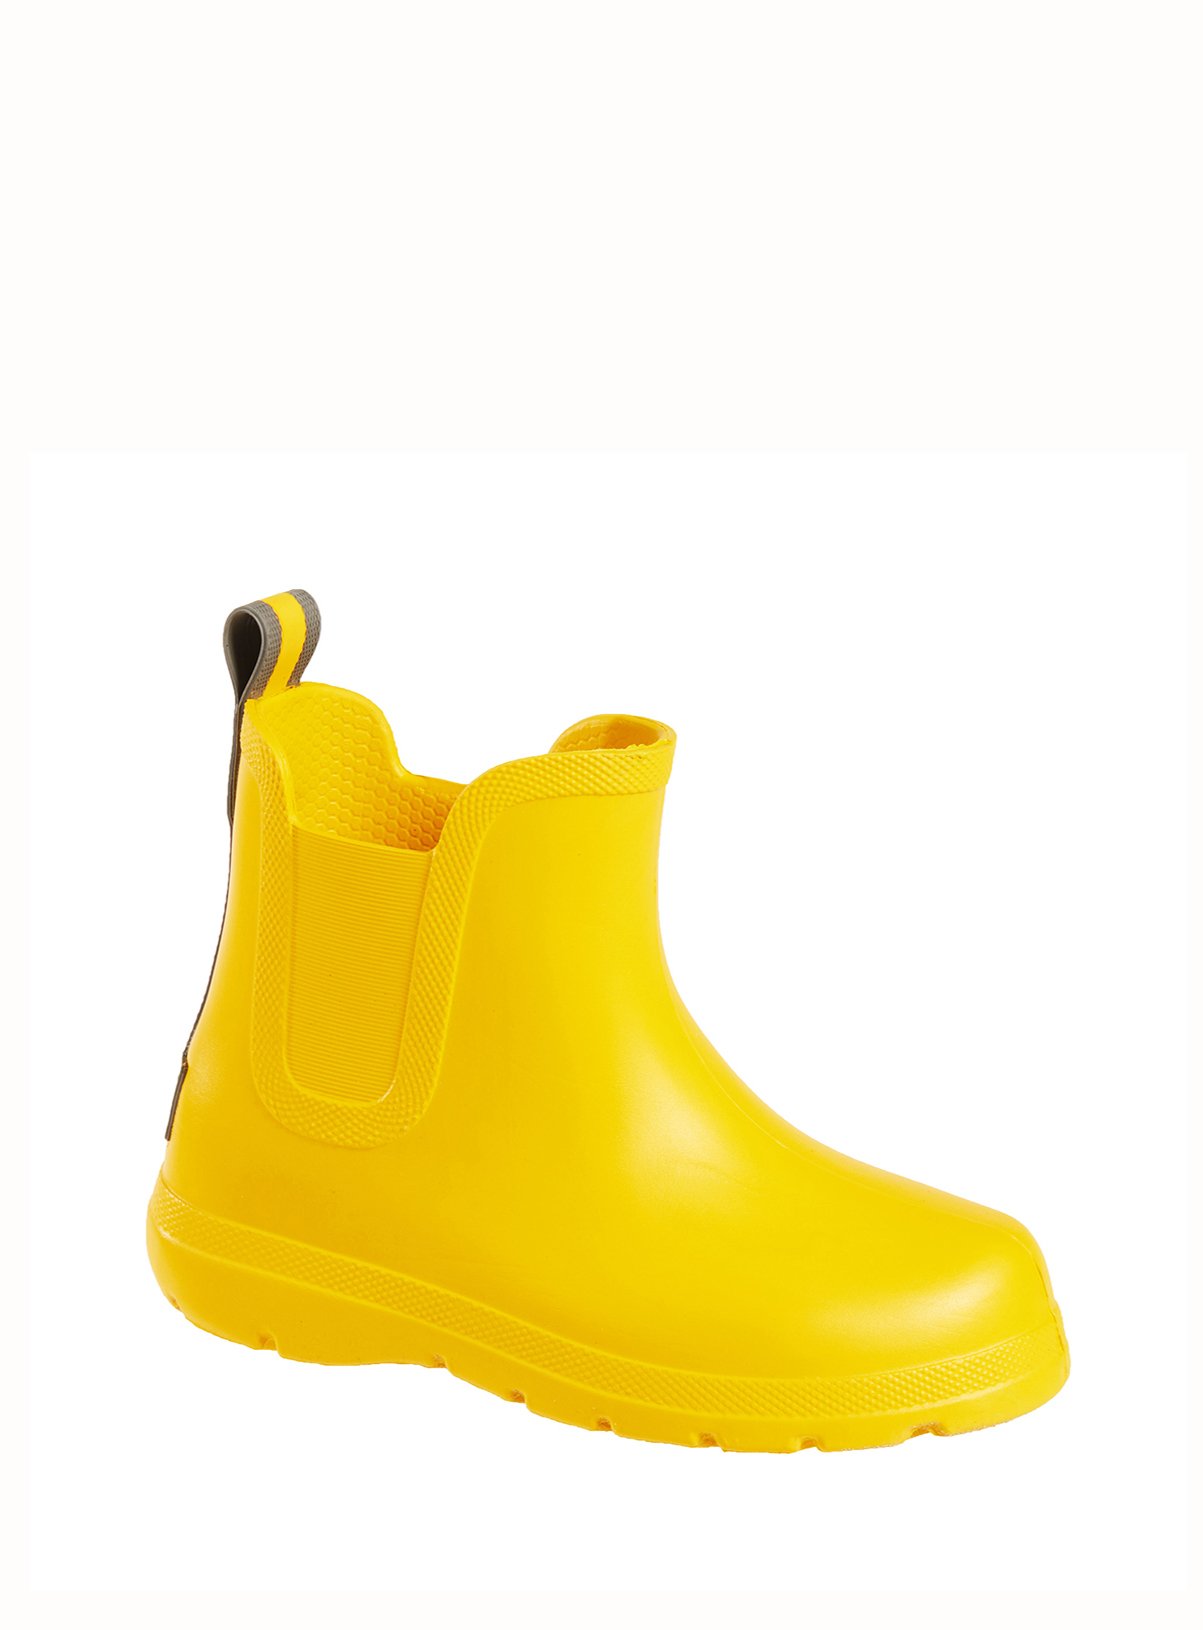 infant rain boots